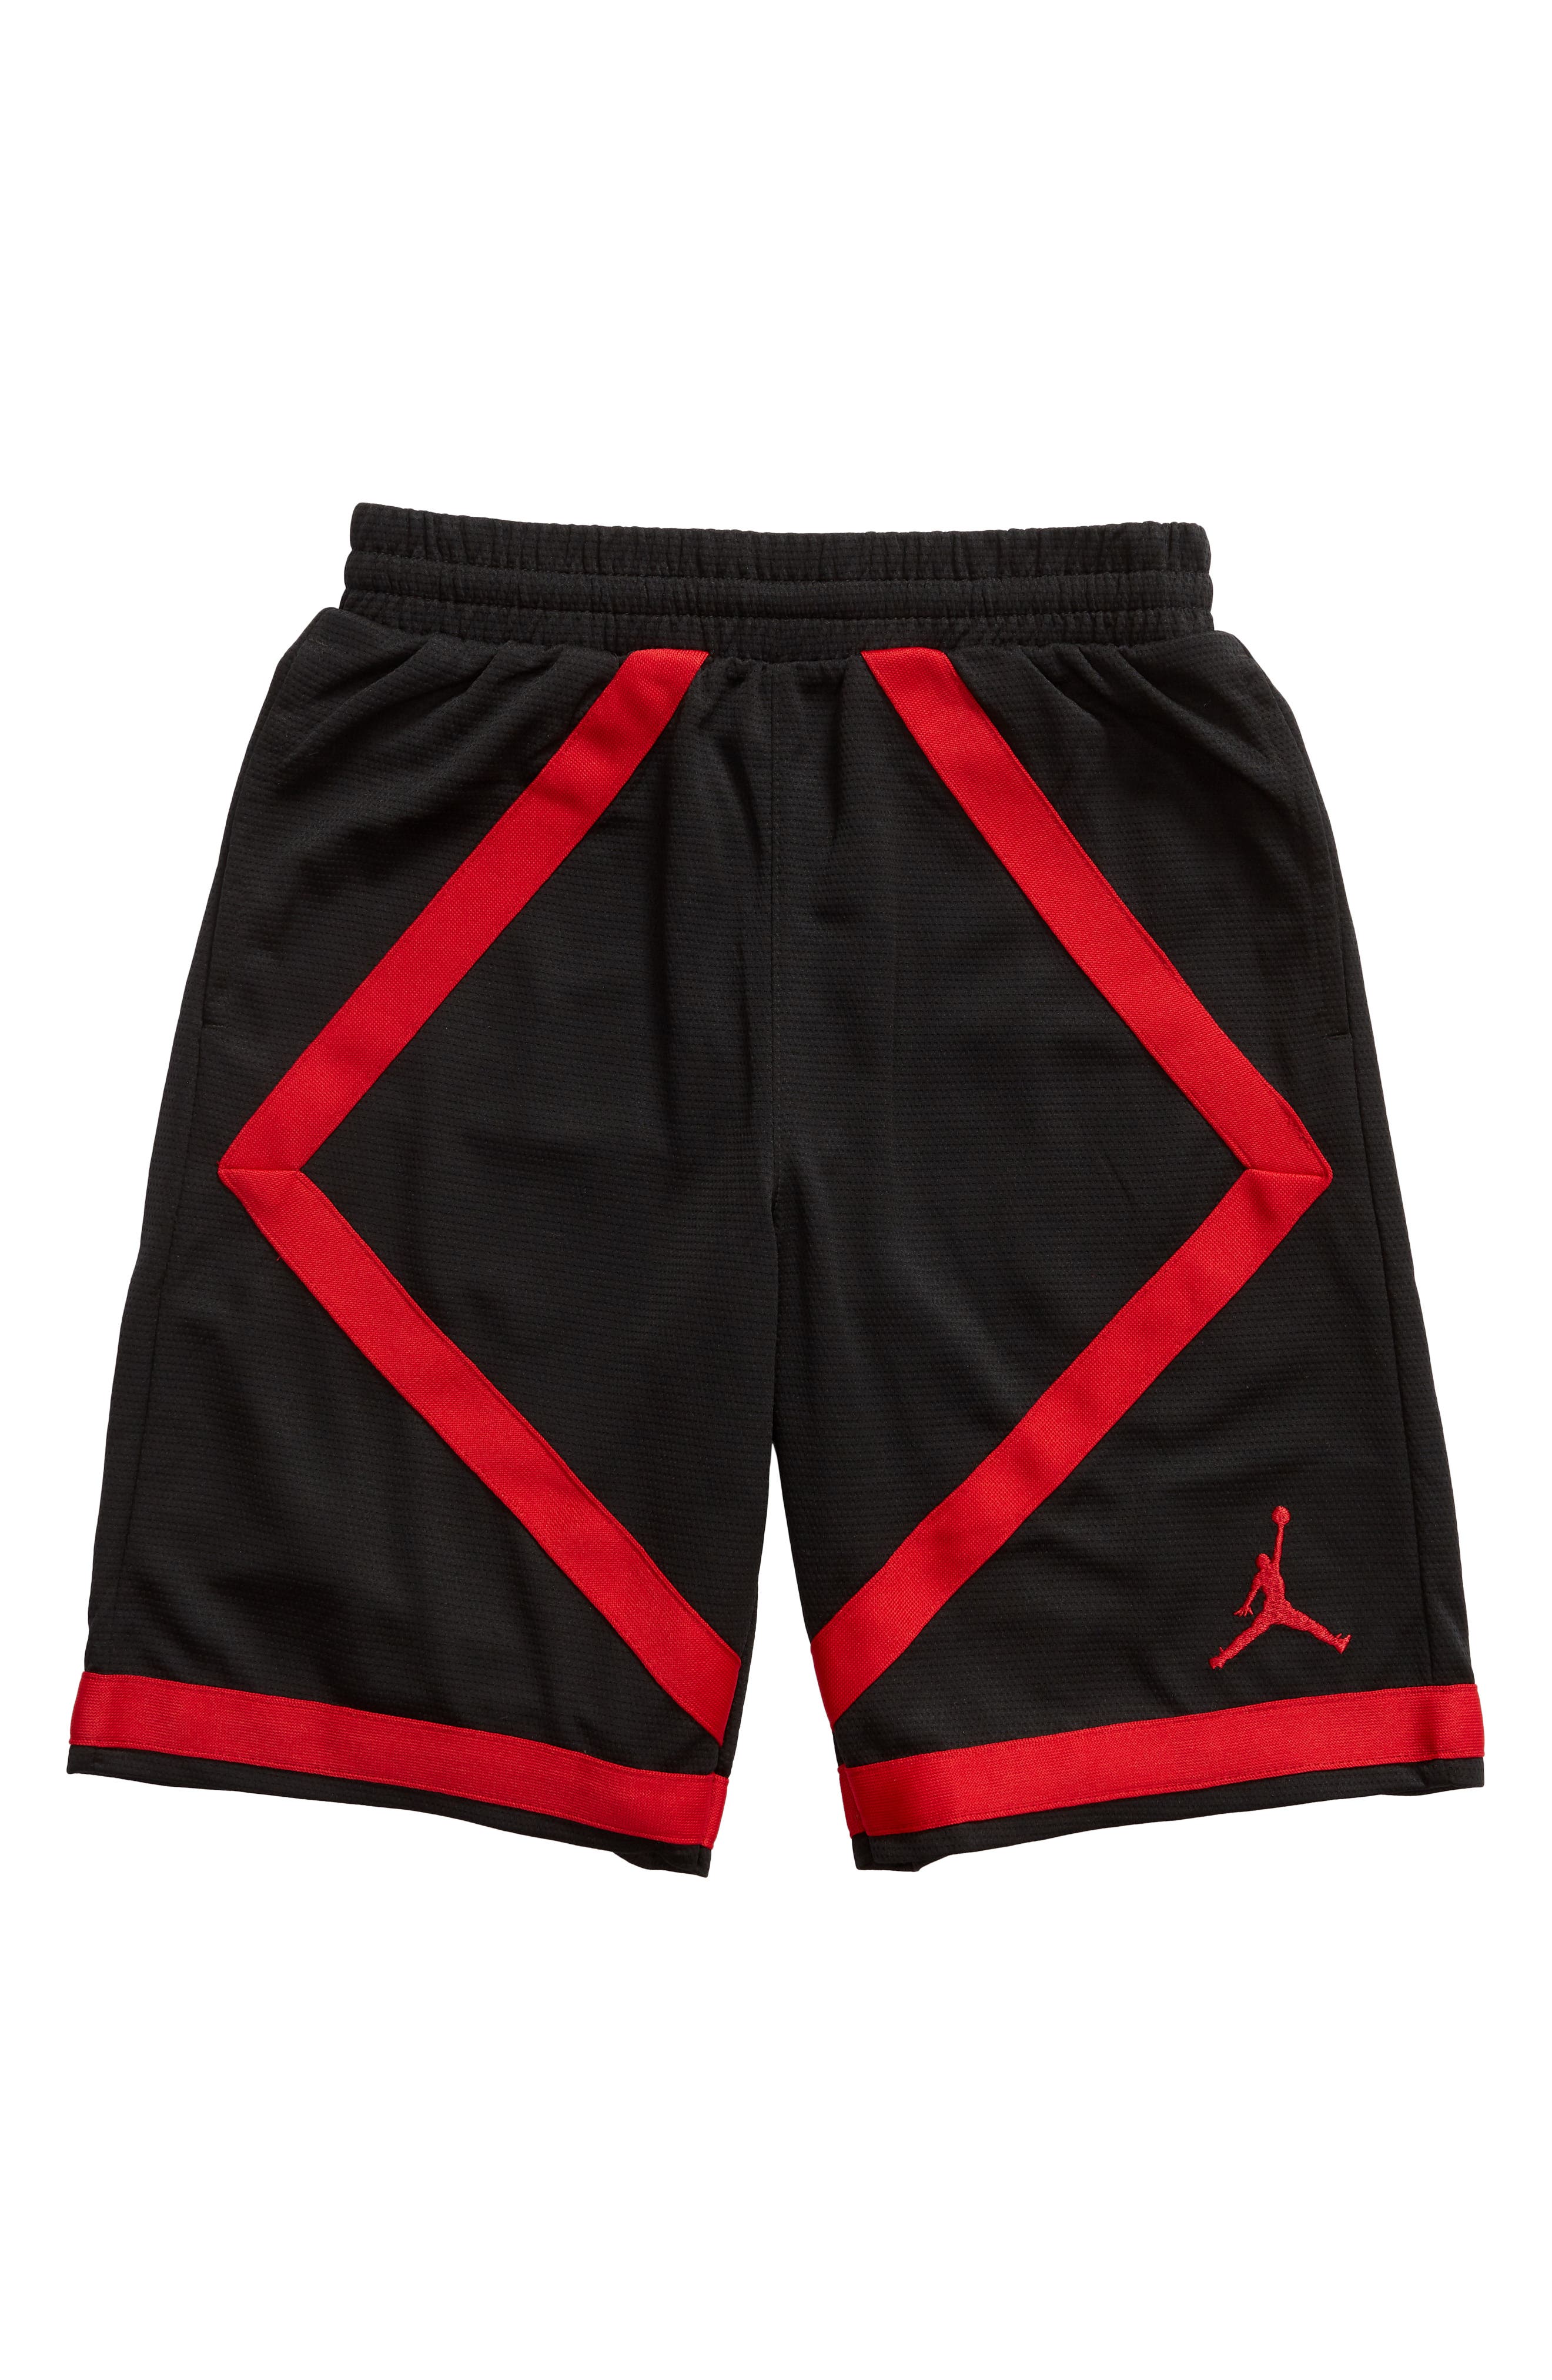 NIKE JORDAN | Taped Basketball Shorts 